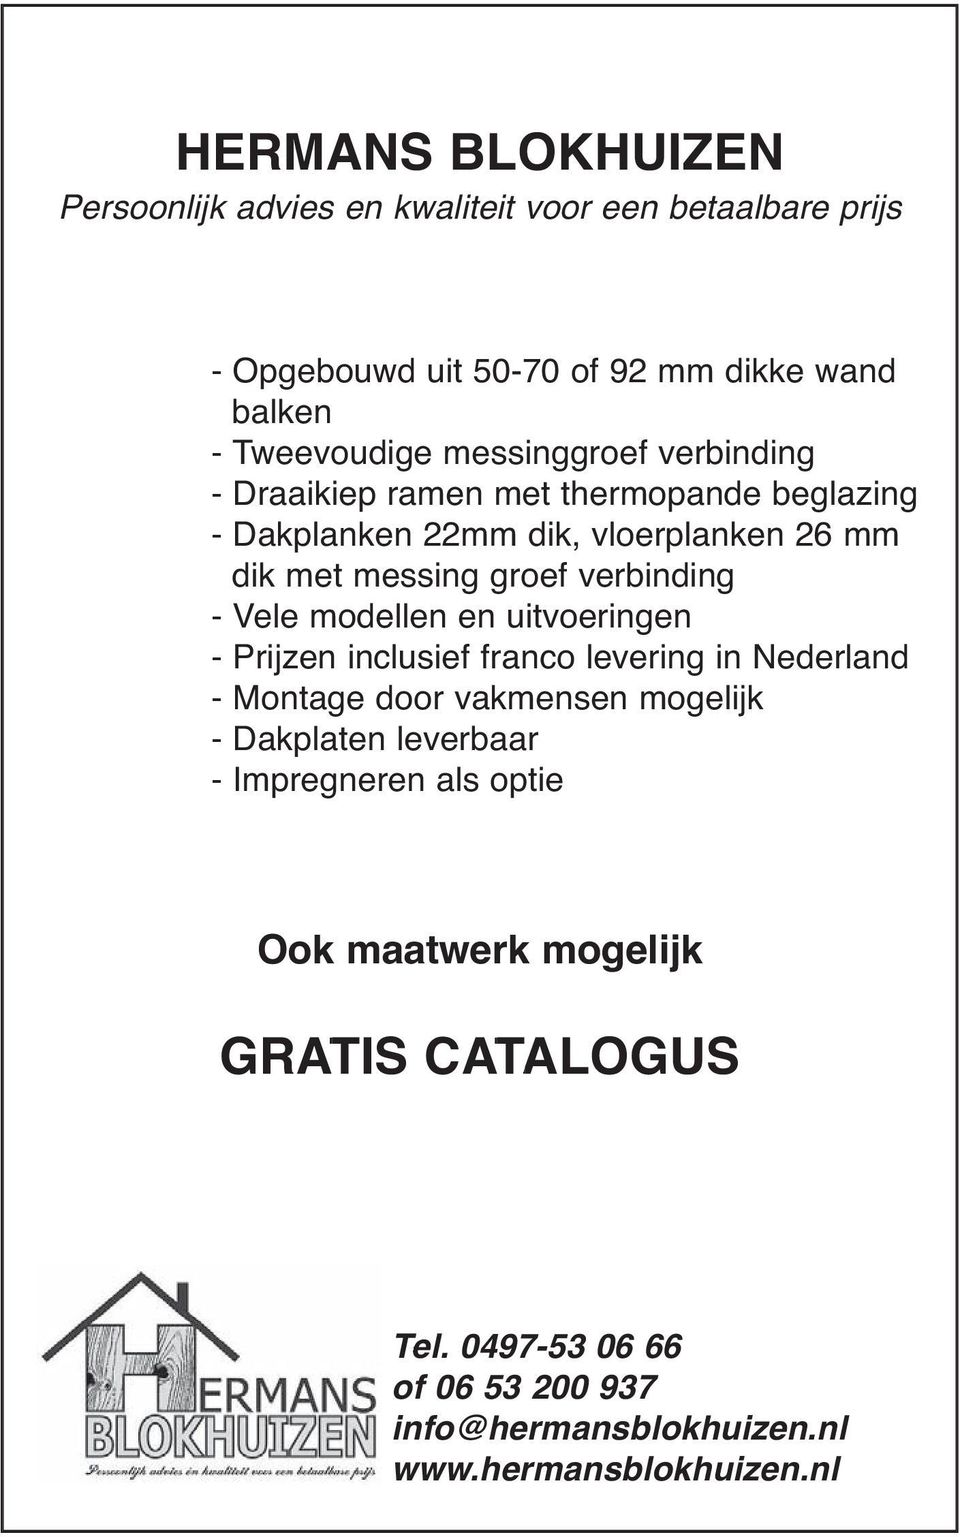 - Vele modellen en uitvoeringen - Prijzen inclusief franco levering in Nederland - Montage door vakmensen mogelijk - Dakplaten leverbaar -